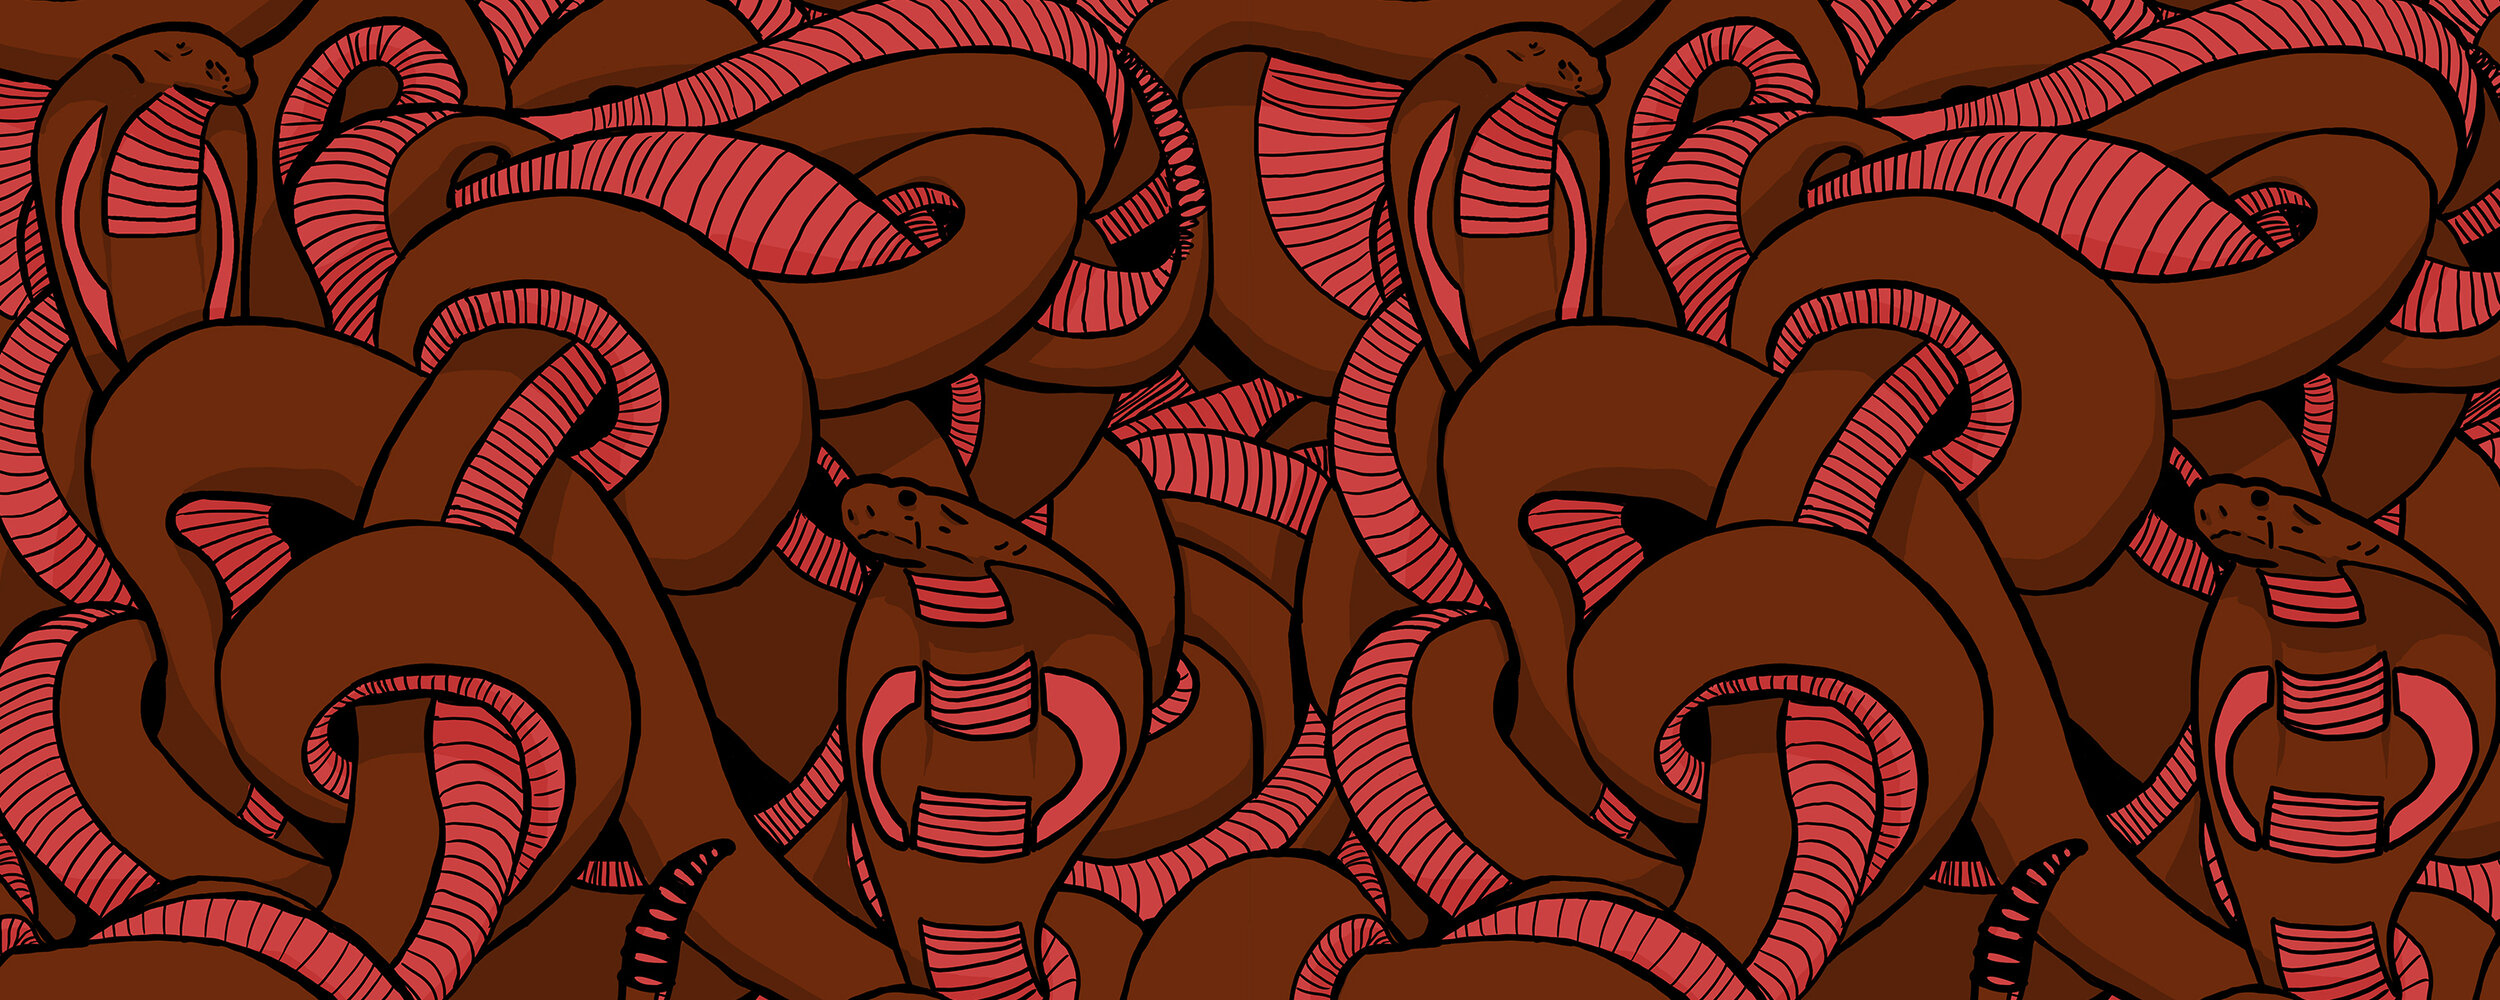 snakes-red.jpg